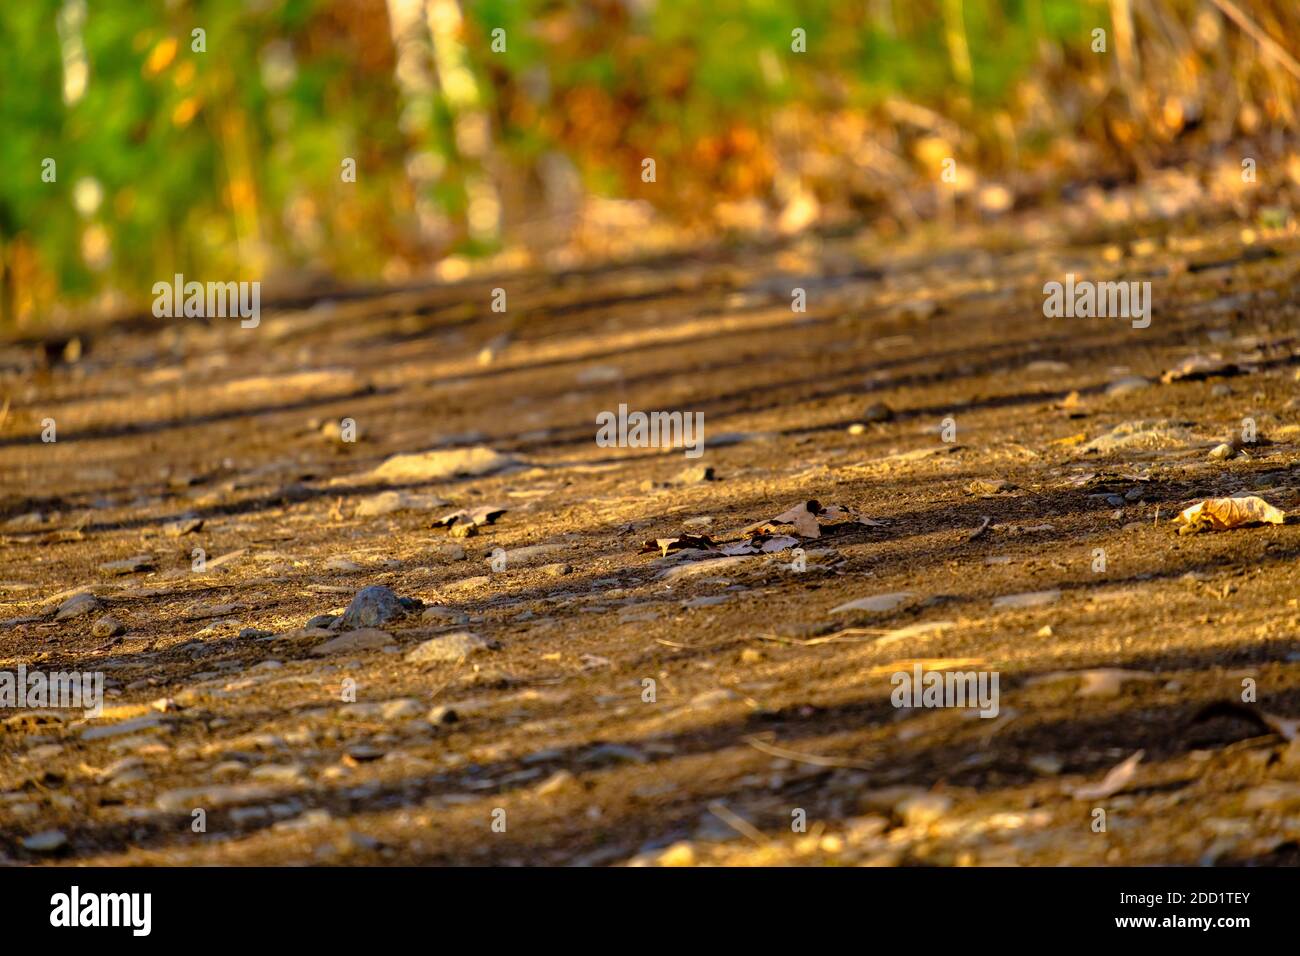 Una vista prospettica a livello del suolo di un sentiero naturale attraverso una foresta in autunno, con luce dorata, foglie cadute e ombre lungo di esso. Foto Stock